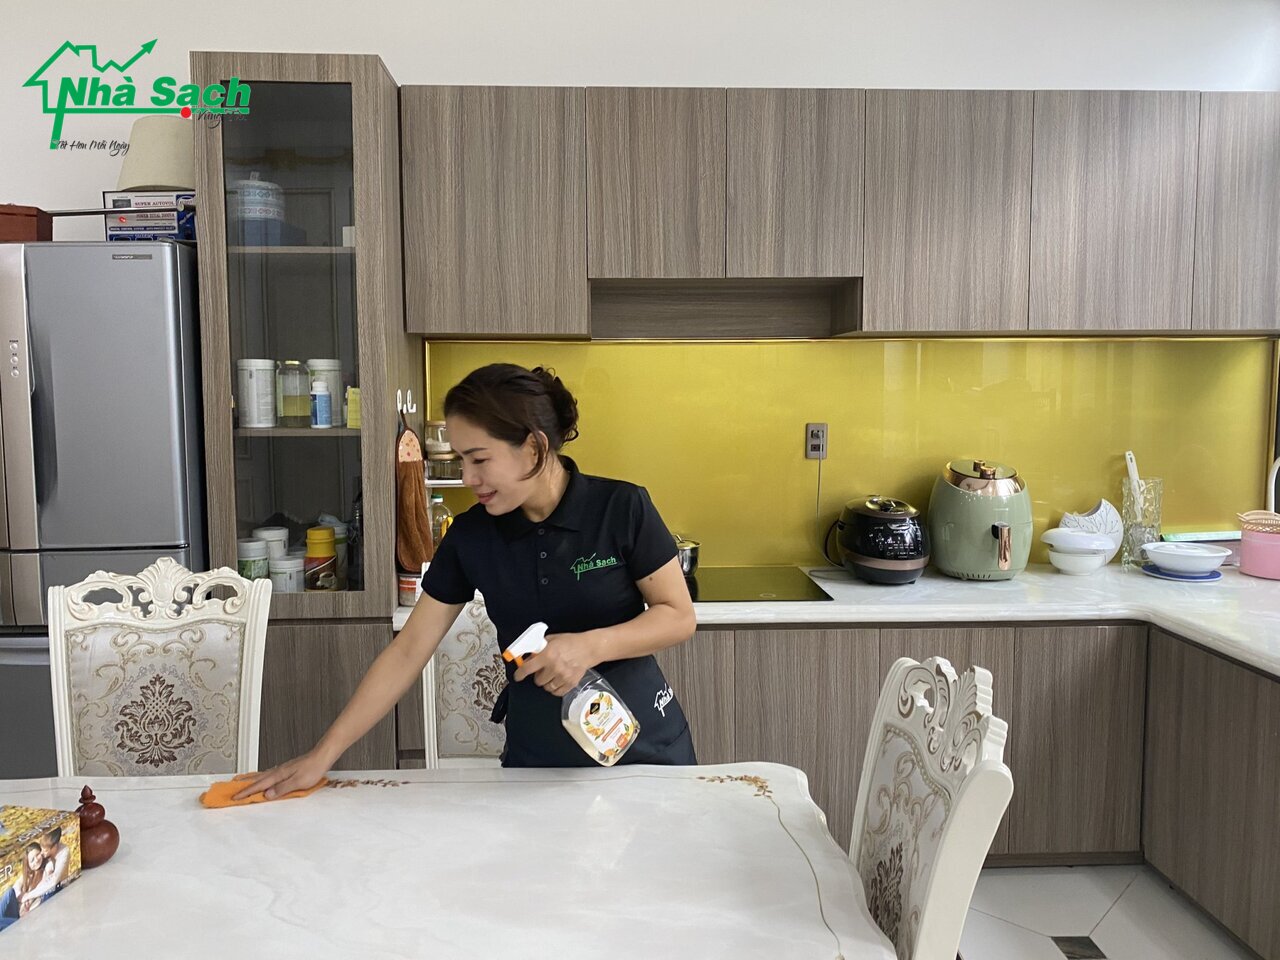 Nhà Sạch Vũng Tàu sở hữu đội ngũ nhân viên chuyên nghiệp tận tình giúp ngôi nhà của bạn trở nên sạch sẽ và thoáng mát hơn, để bạn có thêm thời gian cho việc chăm sóc gia đình, con cái